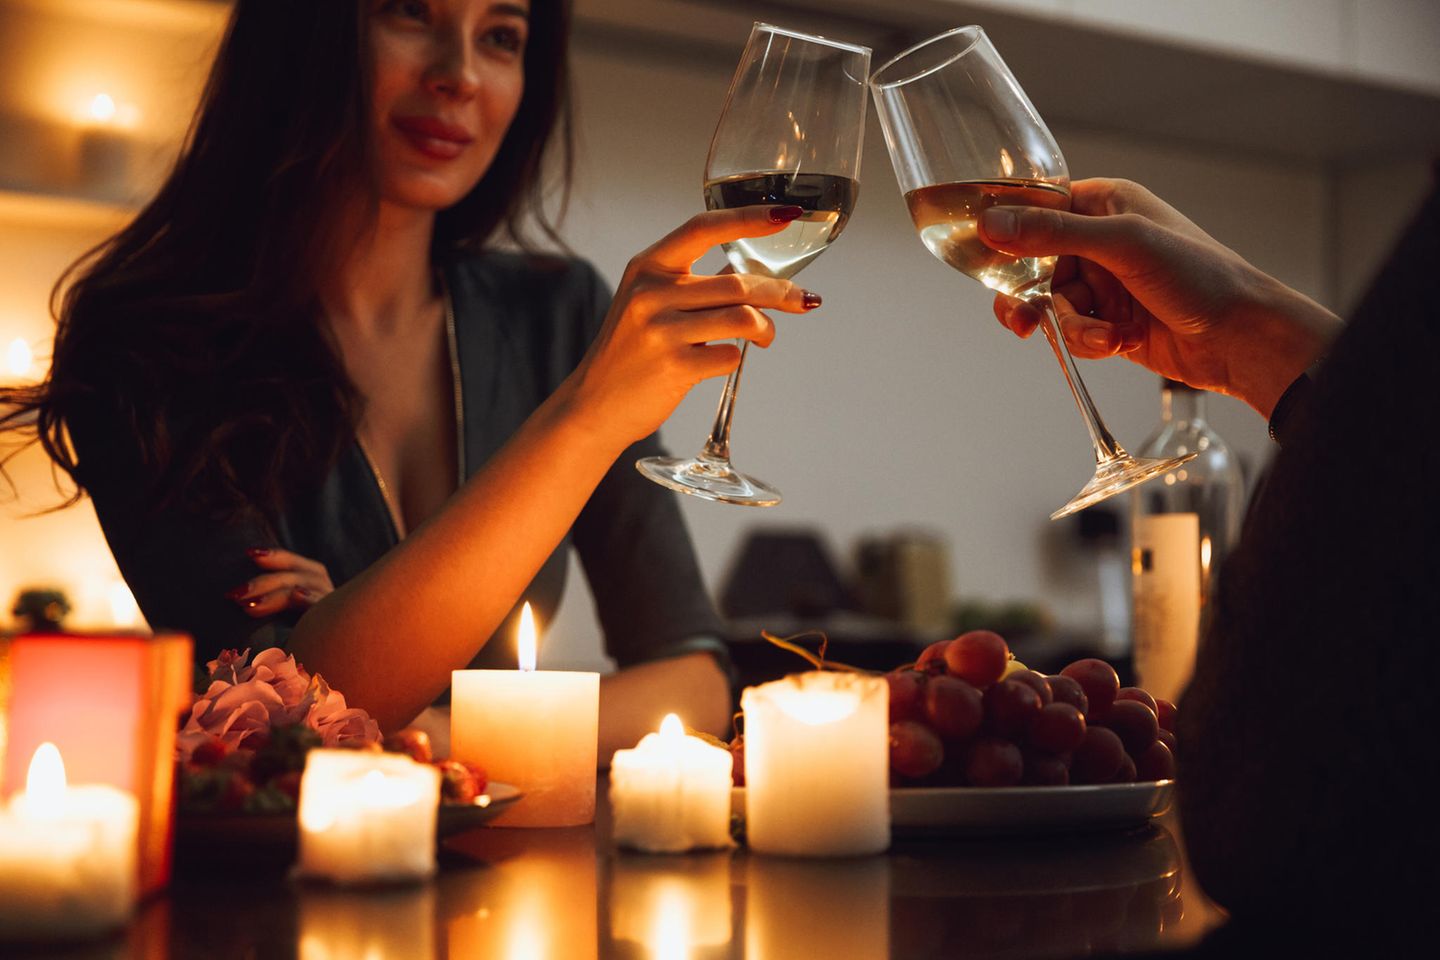 Seid ihr kompatibel?: Pärchen stößt bei romantischem Date mit Wein an